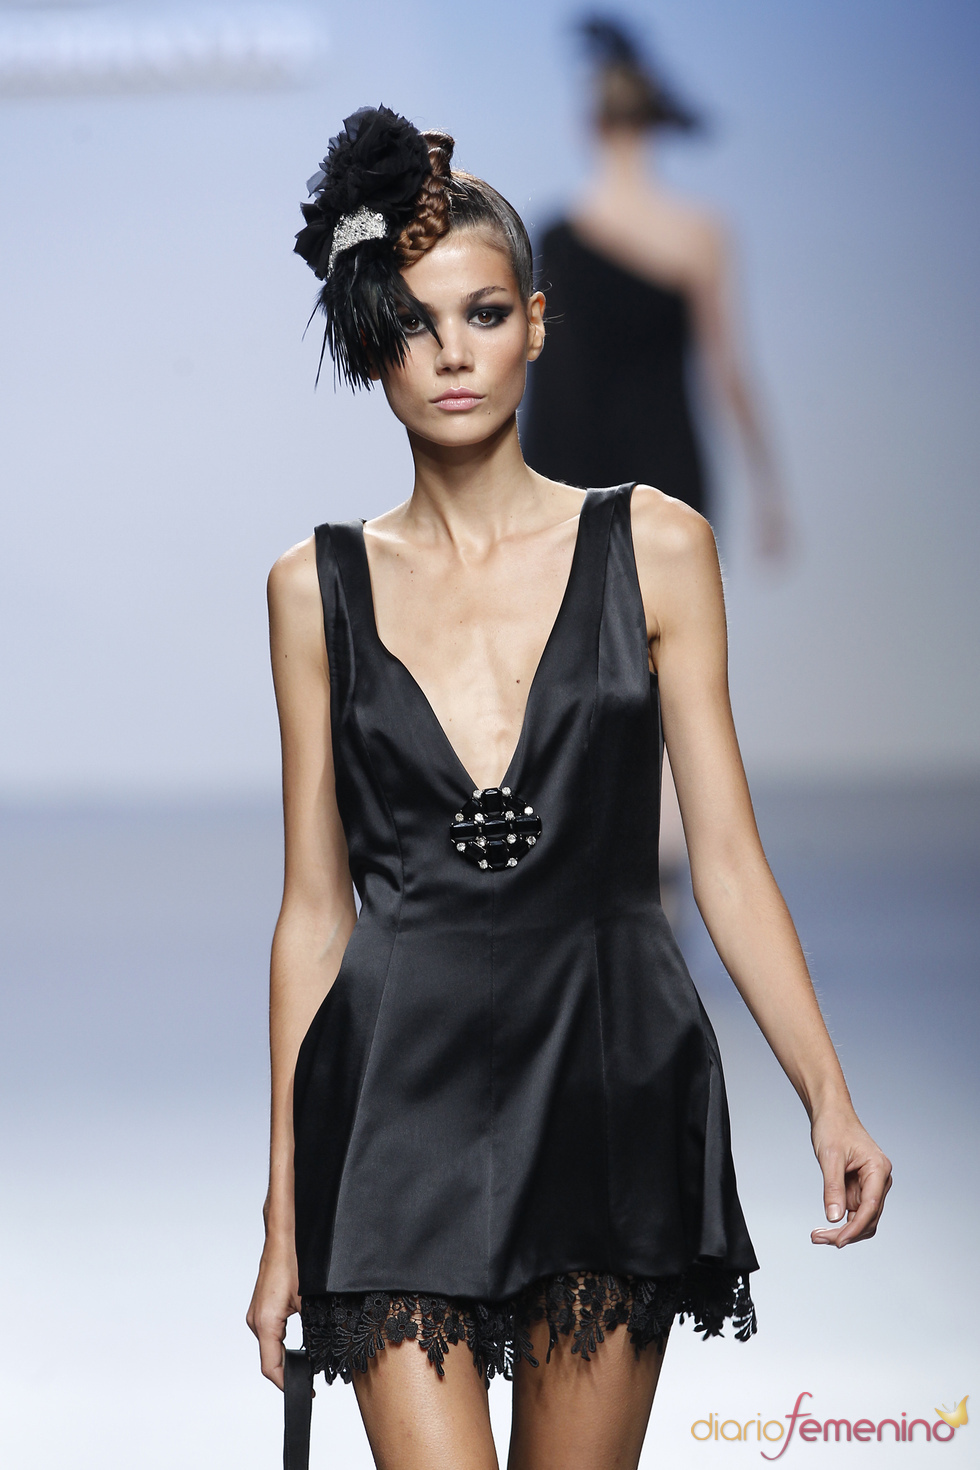 Little black dress con encajes para primavera-verano 2011 de Elio Berhanyer